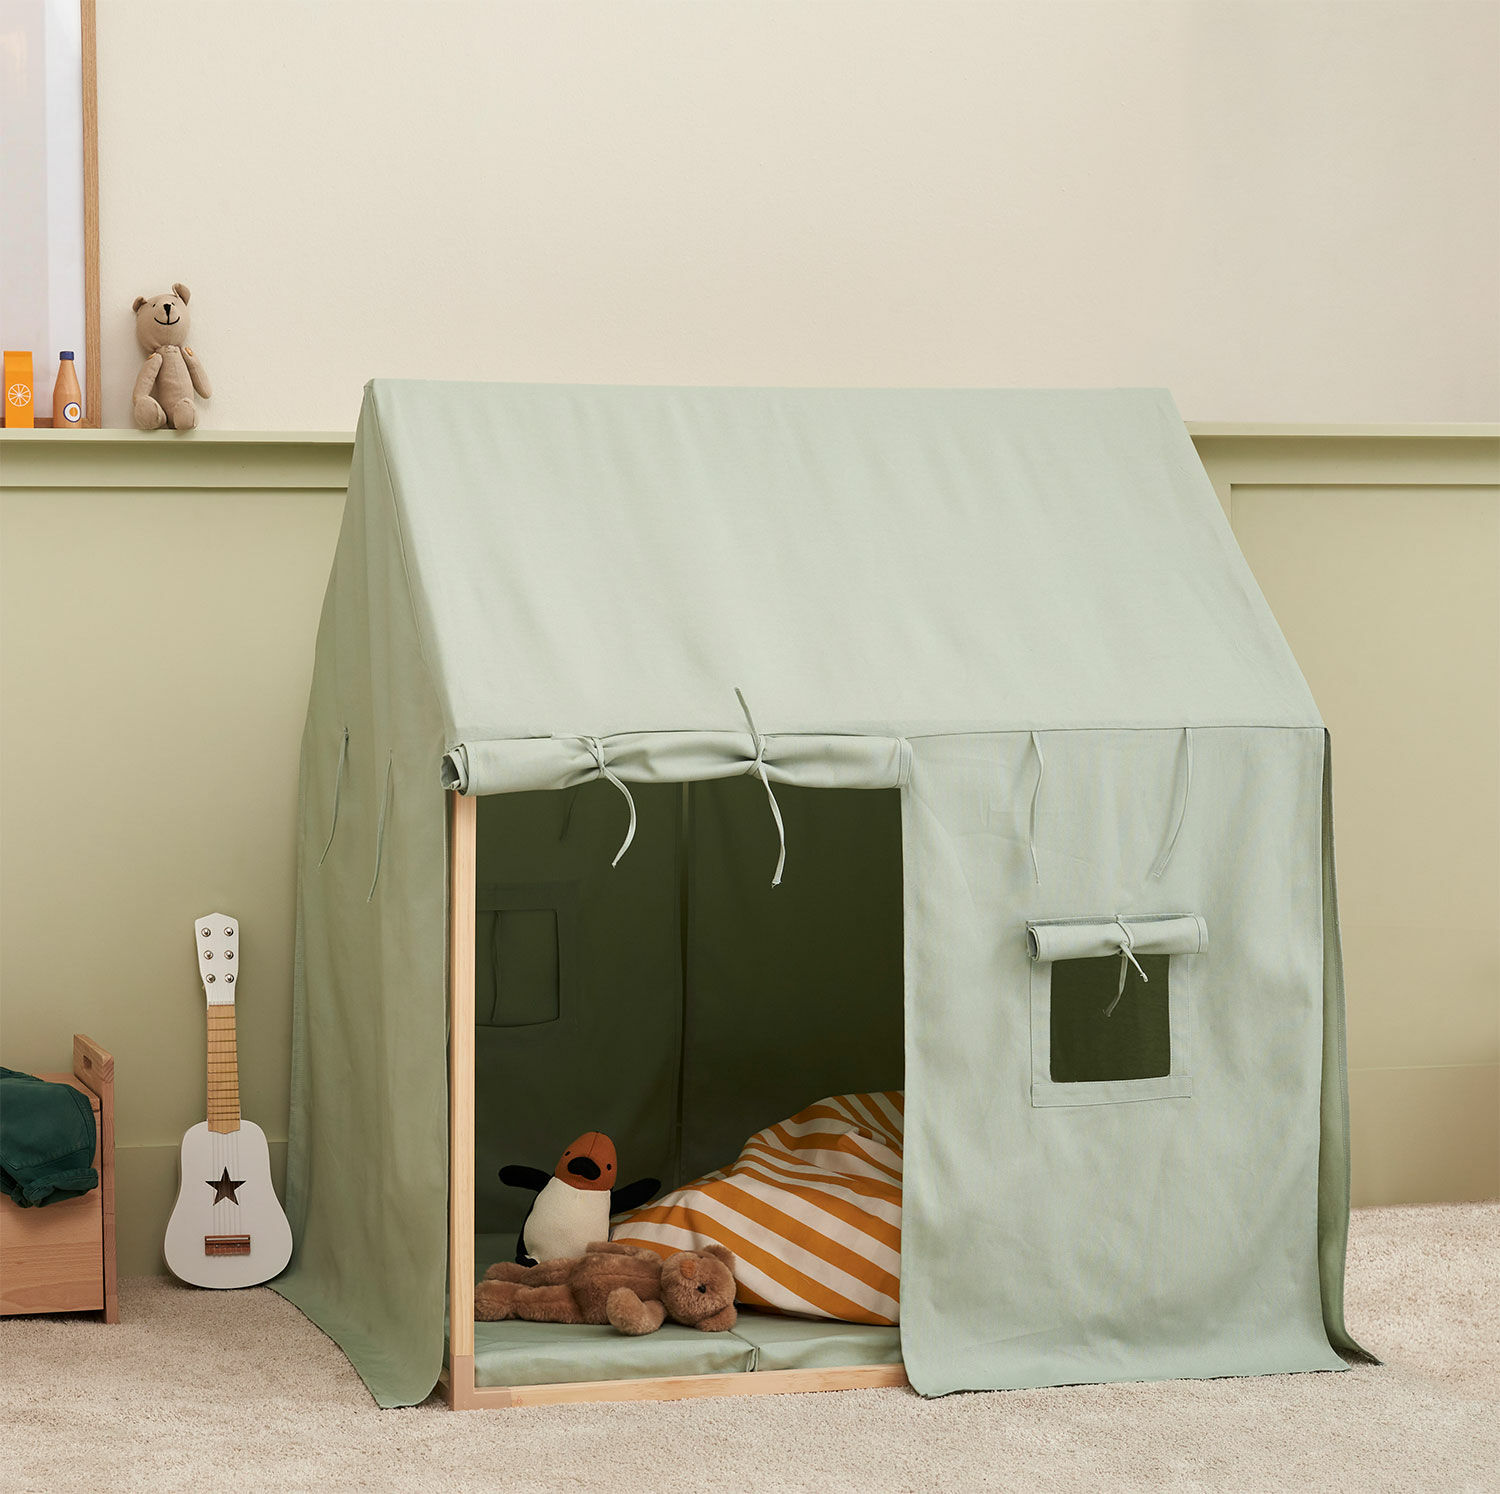 Kinderzelt "Haus mintgrün" (für Kinder ab 3 Jahren) von Kid's Concept